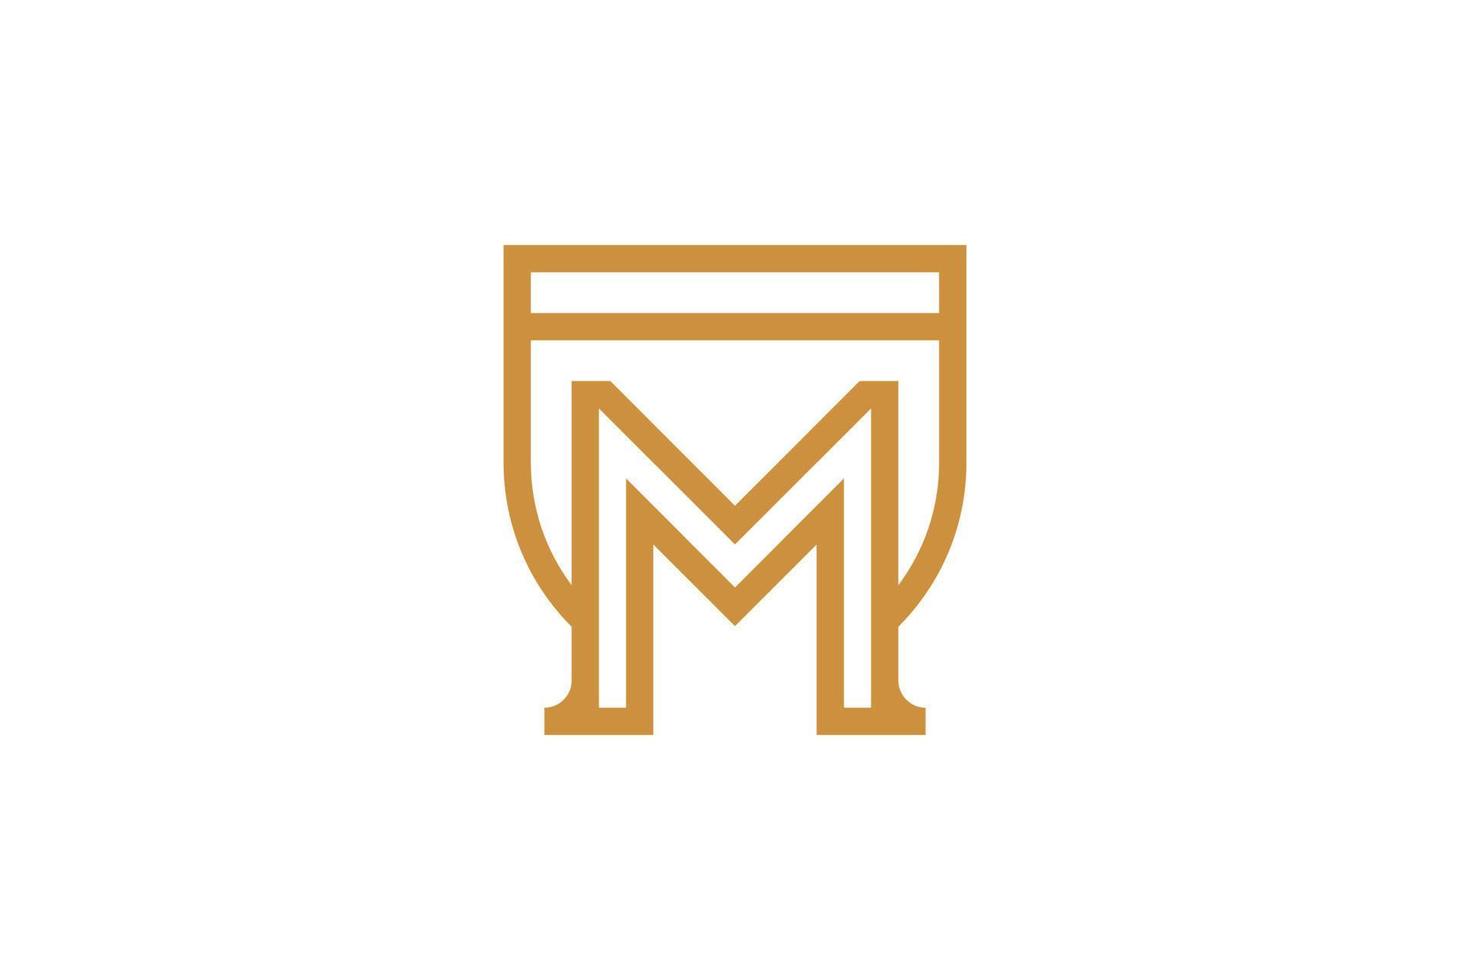 resumen inicial letra m monoline logo vector